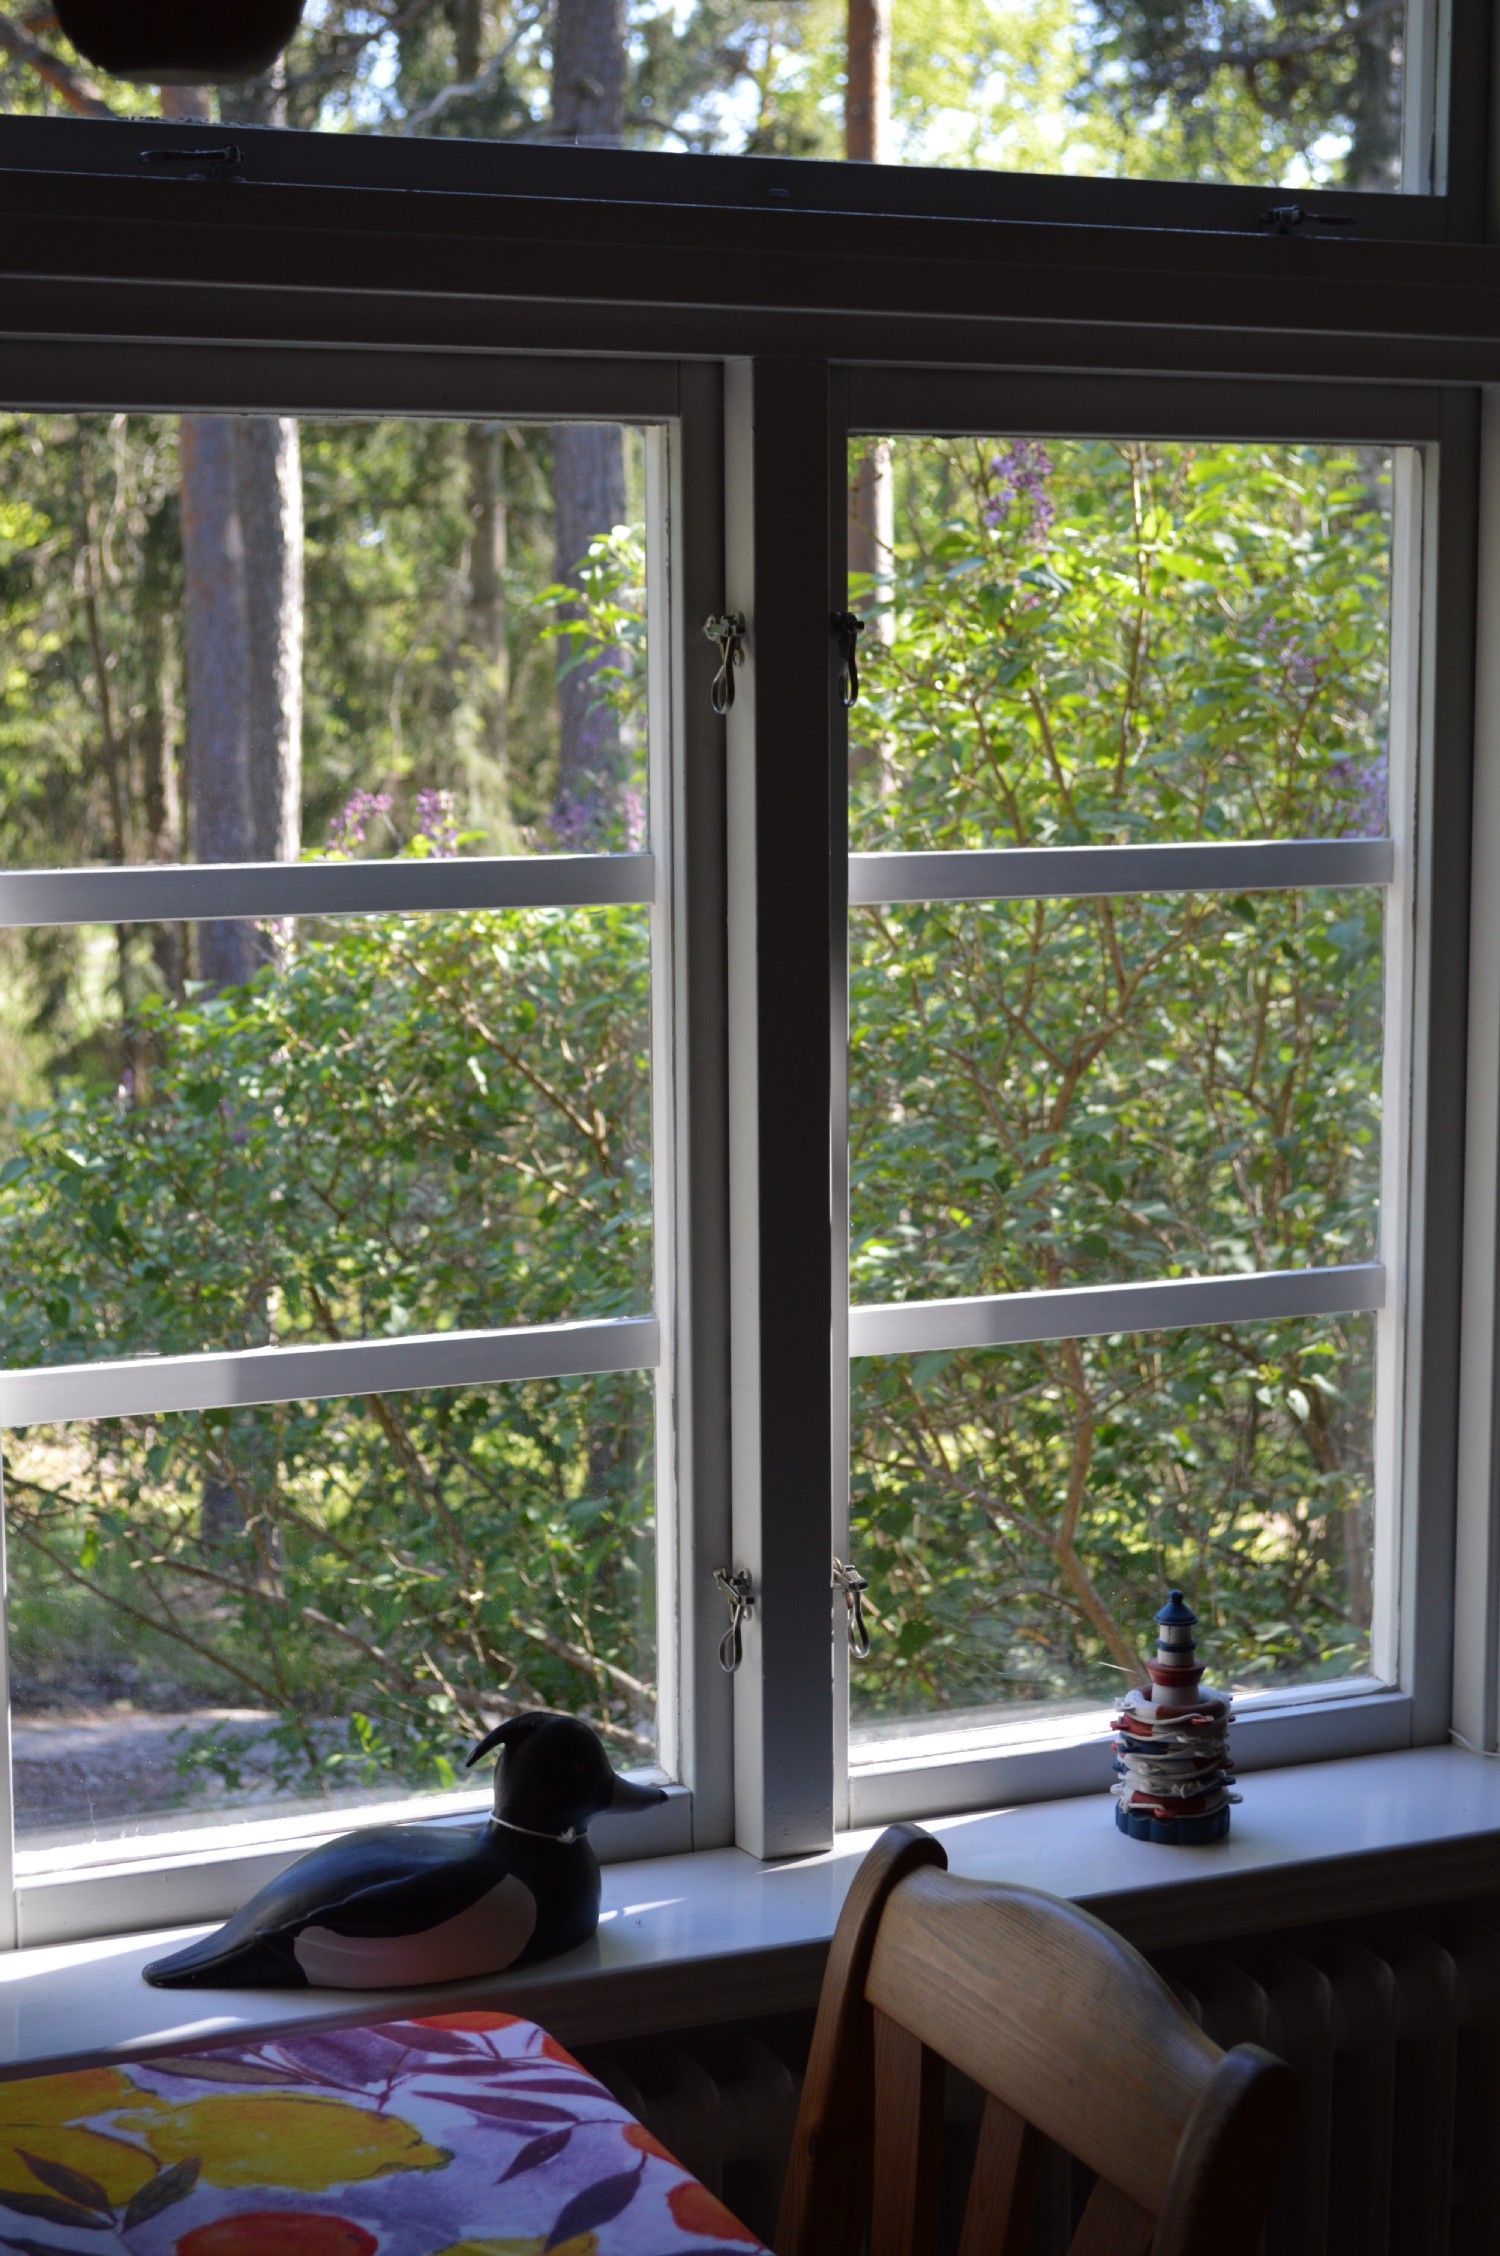 Kksfnster vy/ Kitchen window view 